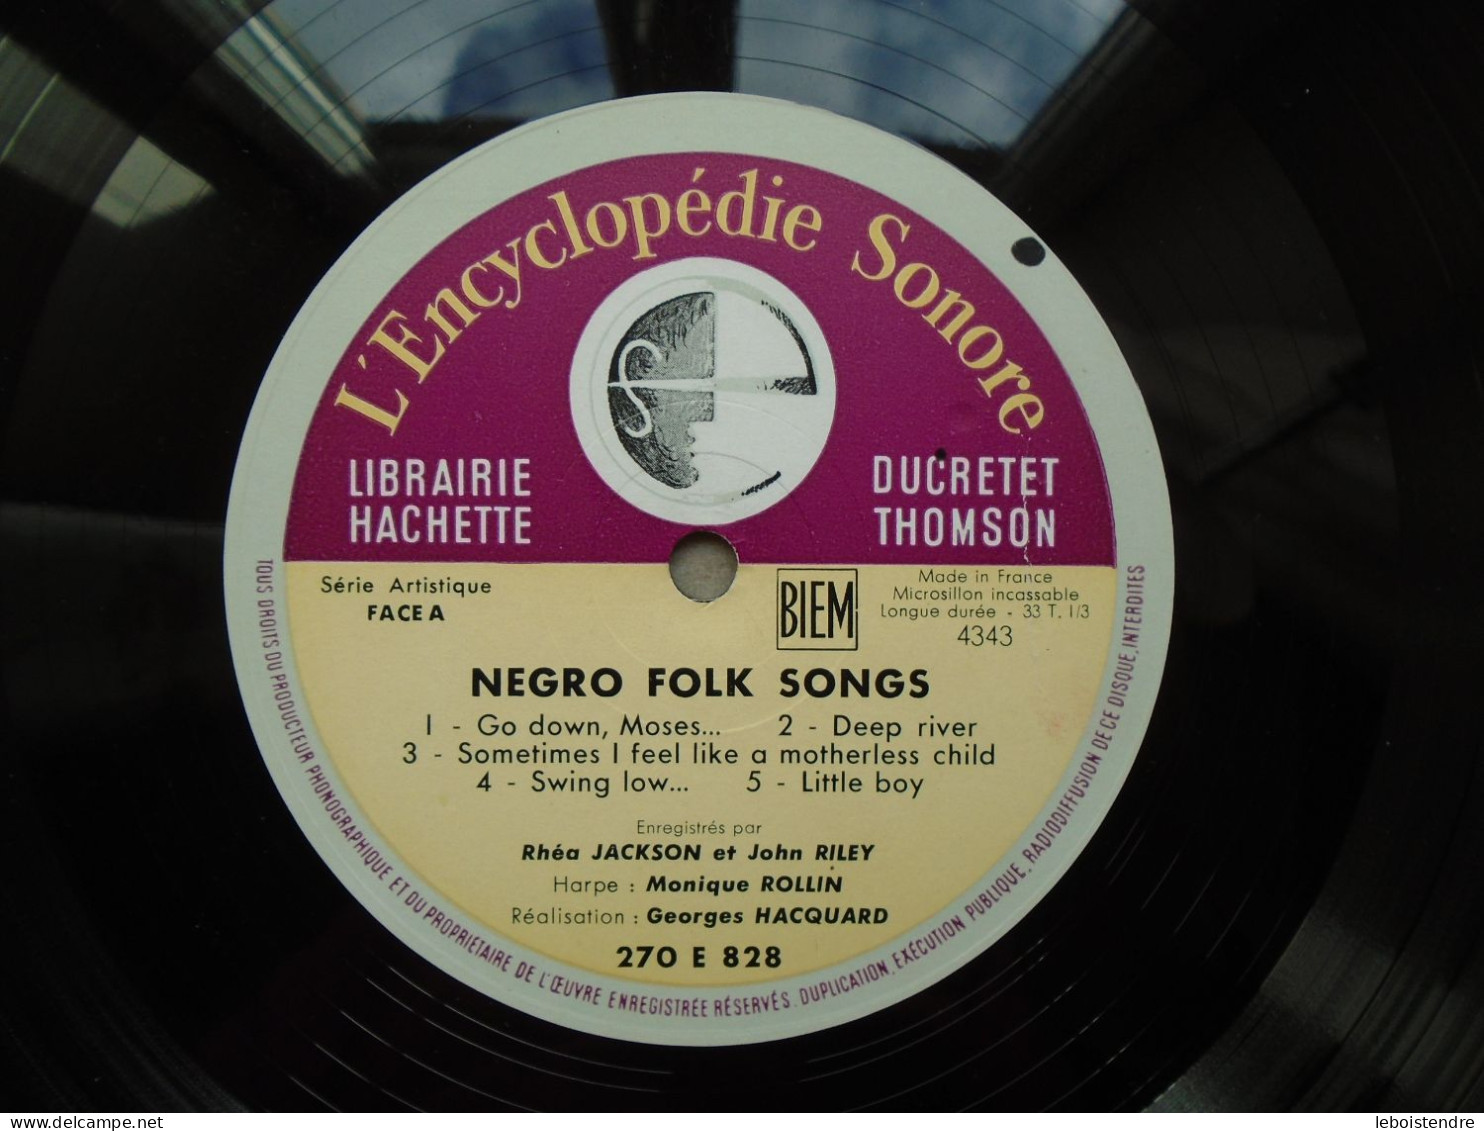 10" VINYLE NEGRO FOLK SONGS 270E828 + LIVRET L ENCYCLOPEDIE SONORE LIBRAIRIE HACHETTE RHEA JACKSON JOHN RILEY - Formats Spéciaux